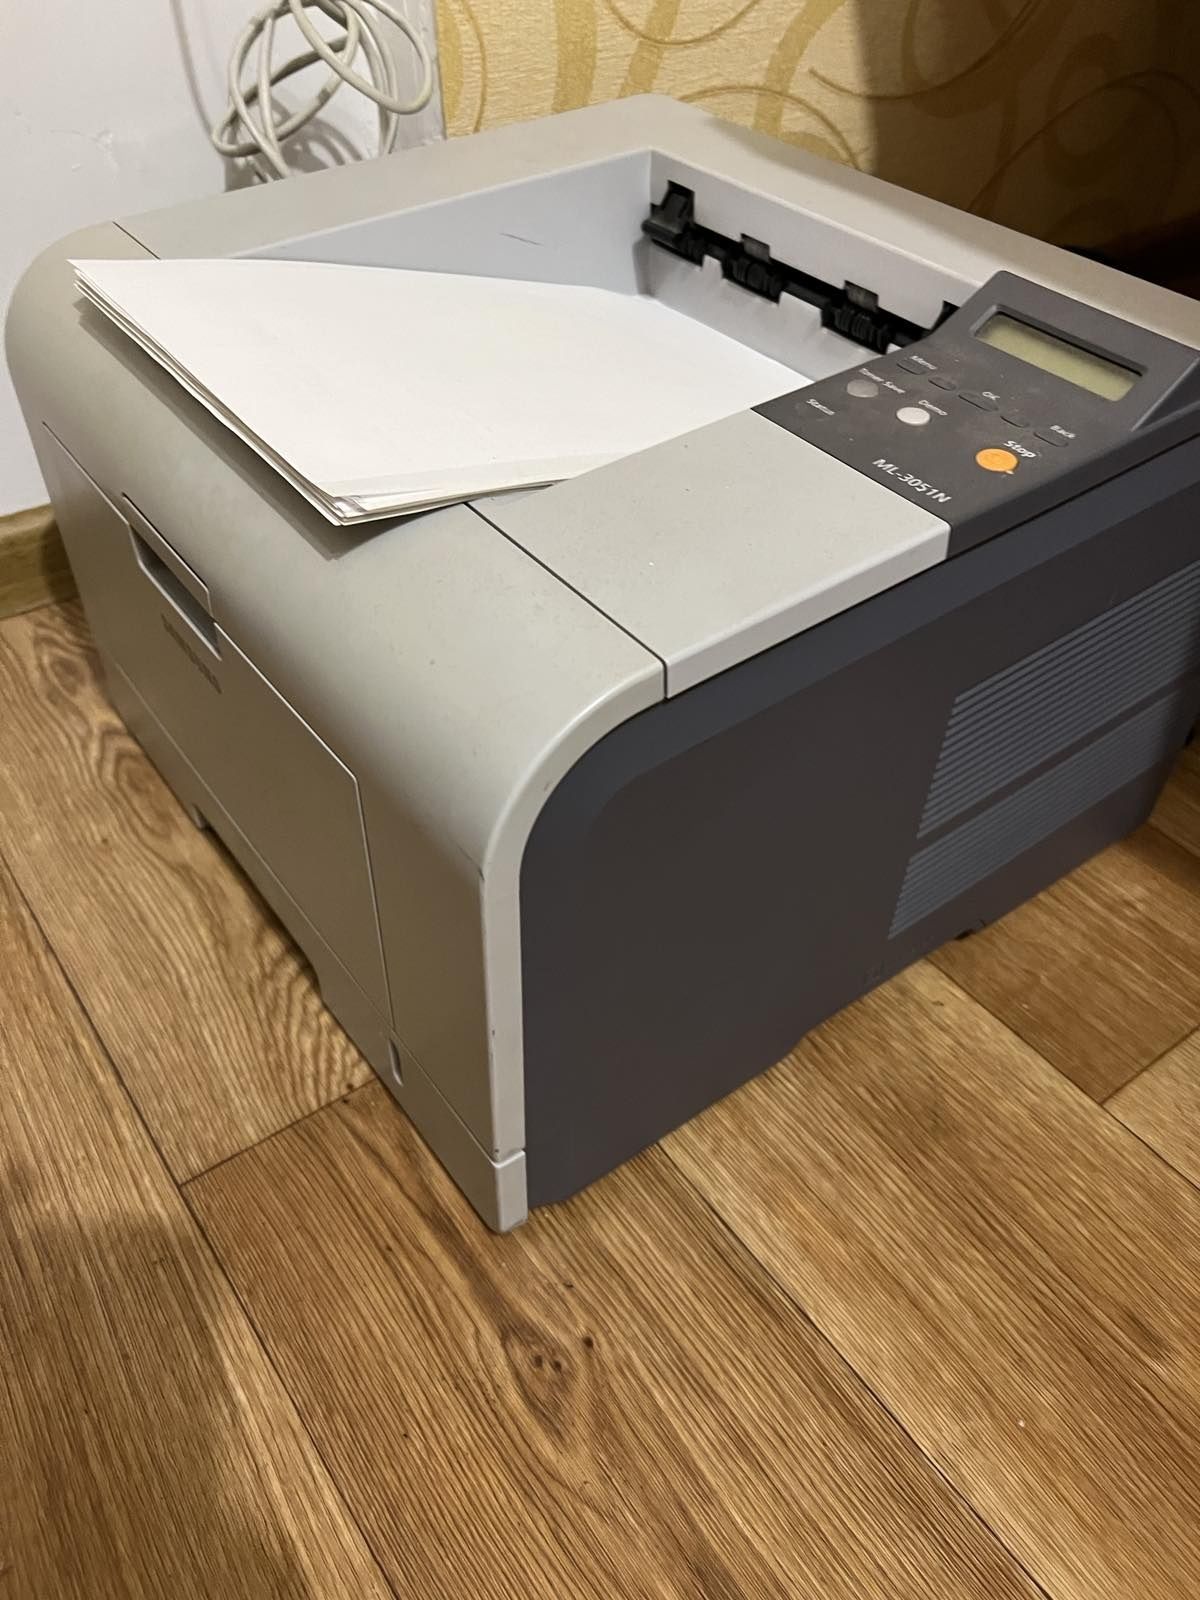 Лазерный принтер Samsung ML-3051N + картридж